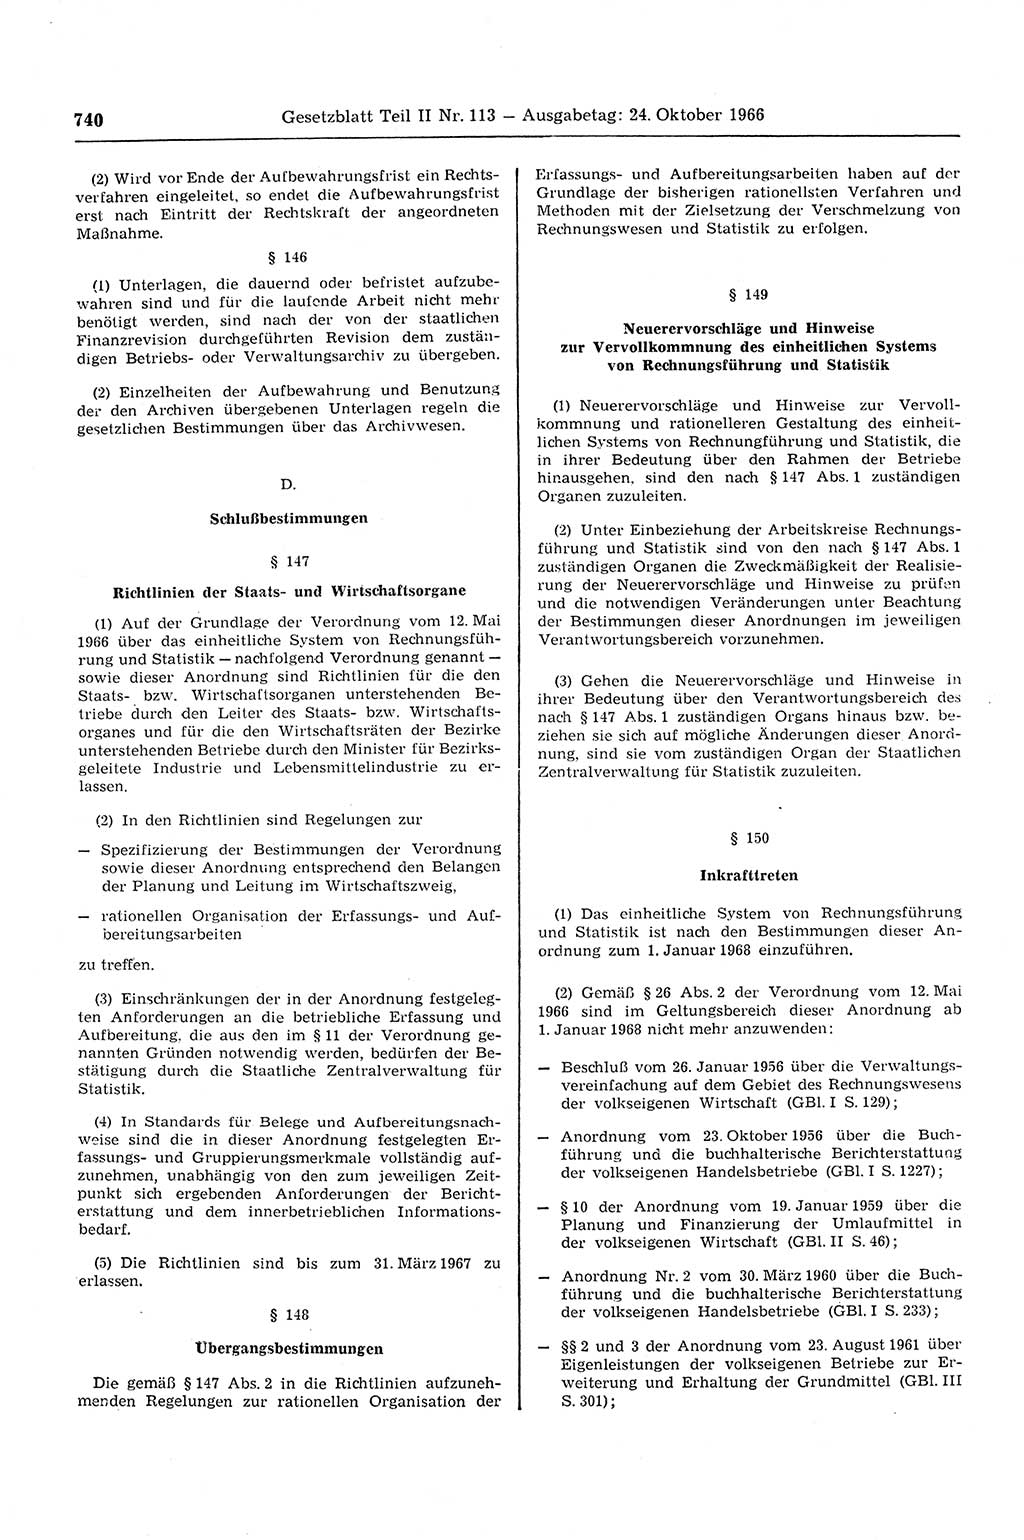 Gesetzblatt (GBl.) der Deutschen Demokratischen Republik (DDR) Teil ⅠⅠ 1966, Seite 740 (GBl. DDR ⅠⅠ 1966, S. 740)